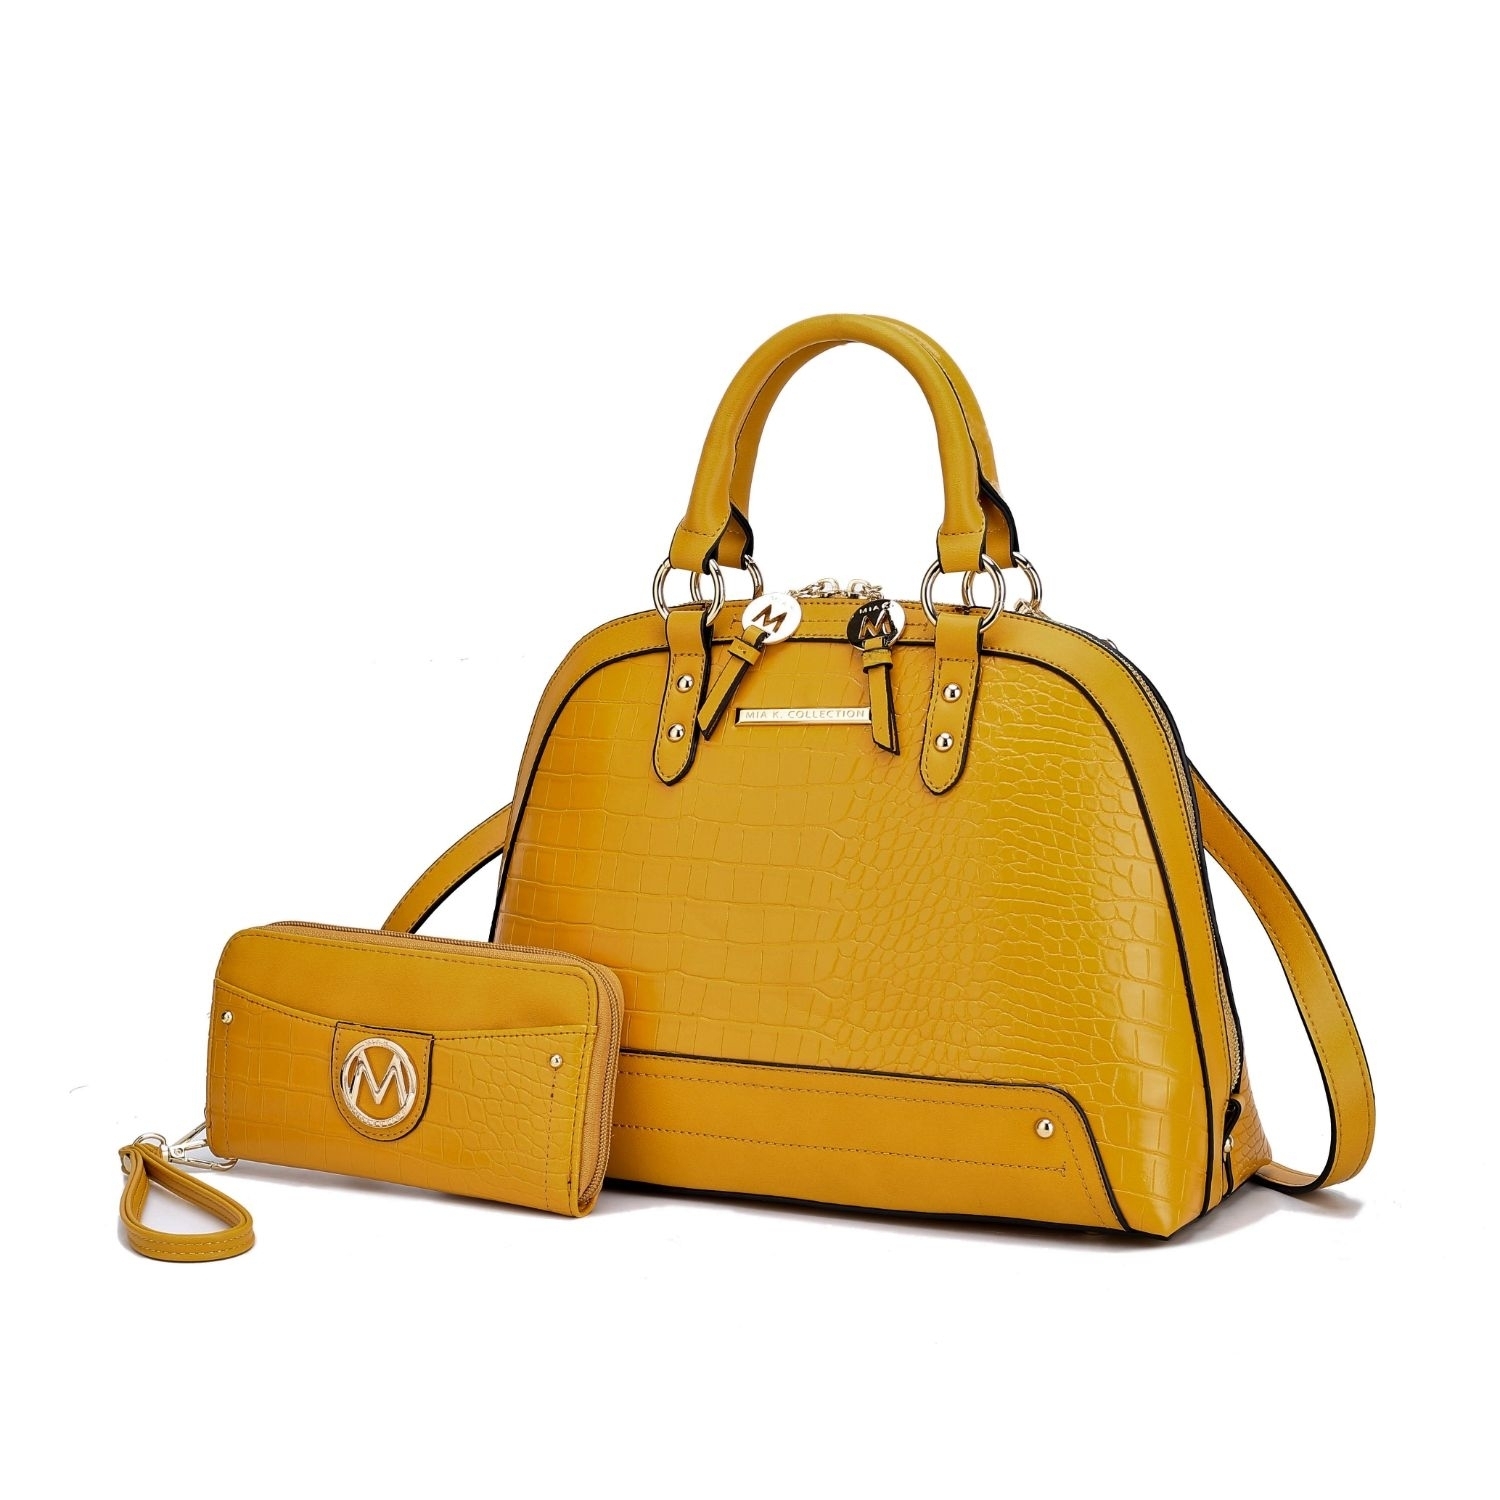 MKF Collection Nora Croco Satchel Handbag By Mia K. - Mustard